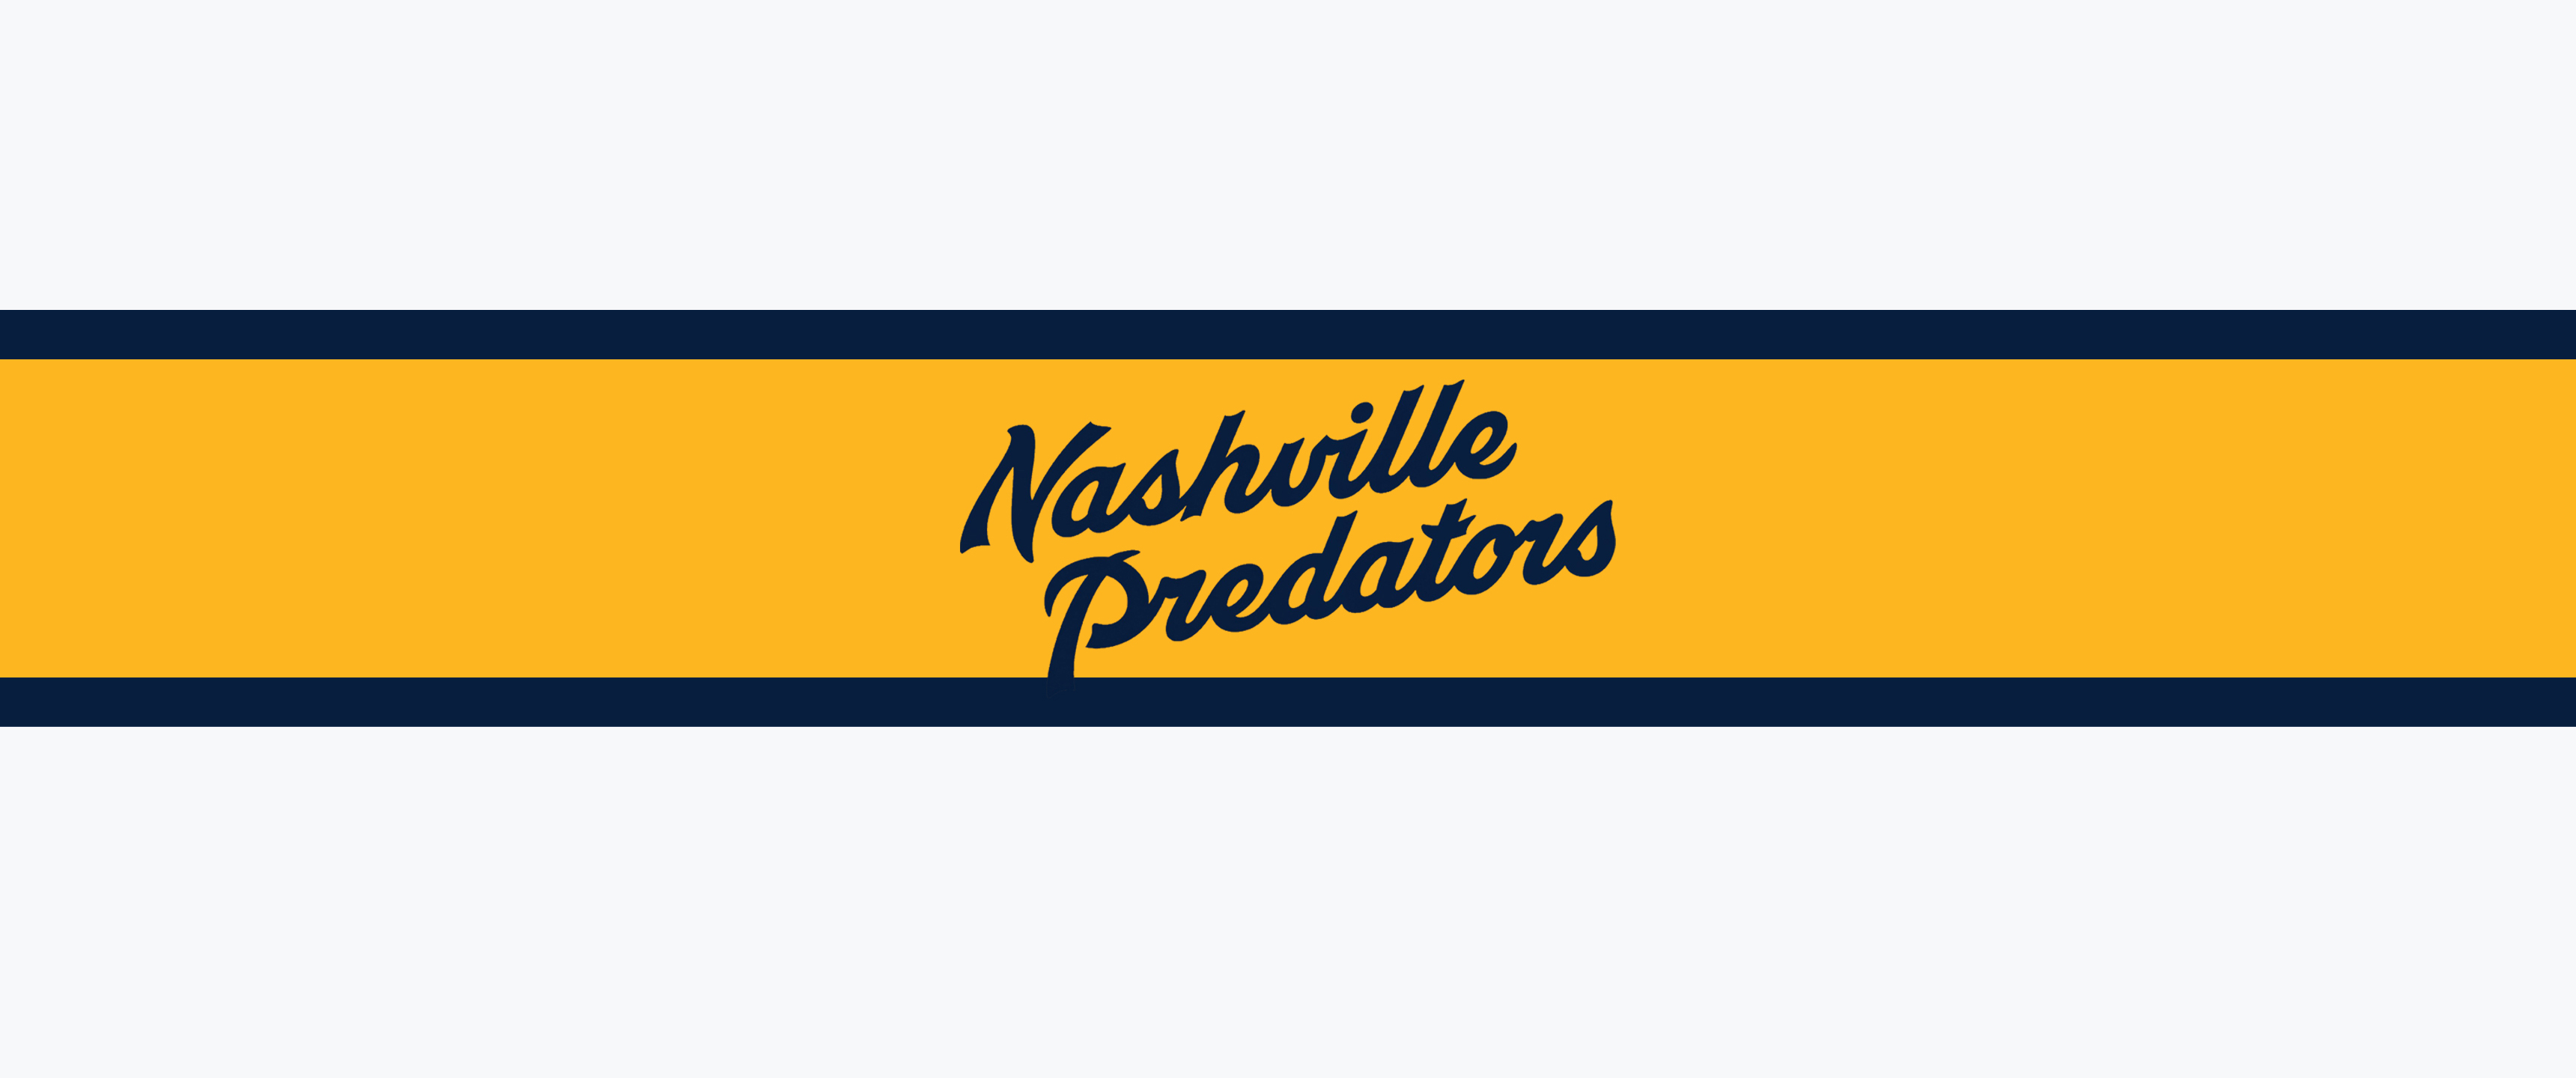 Nashville Predators Desktop Wallpapers